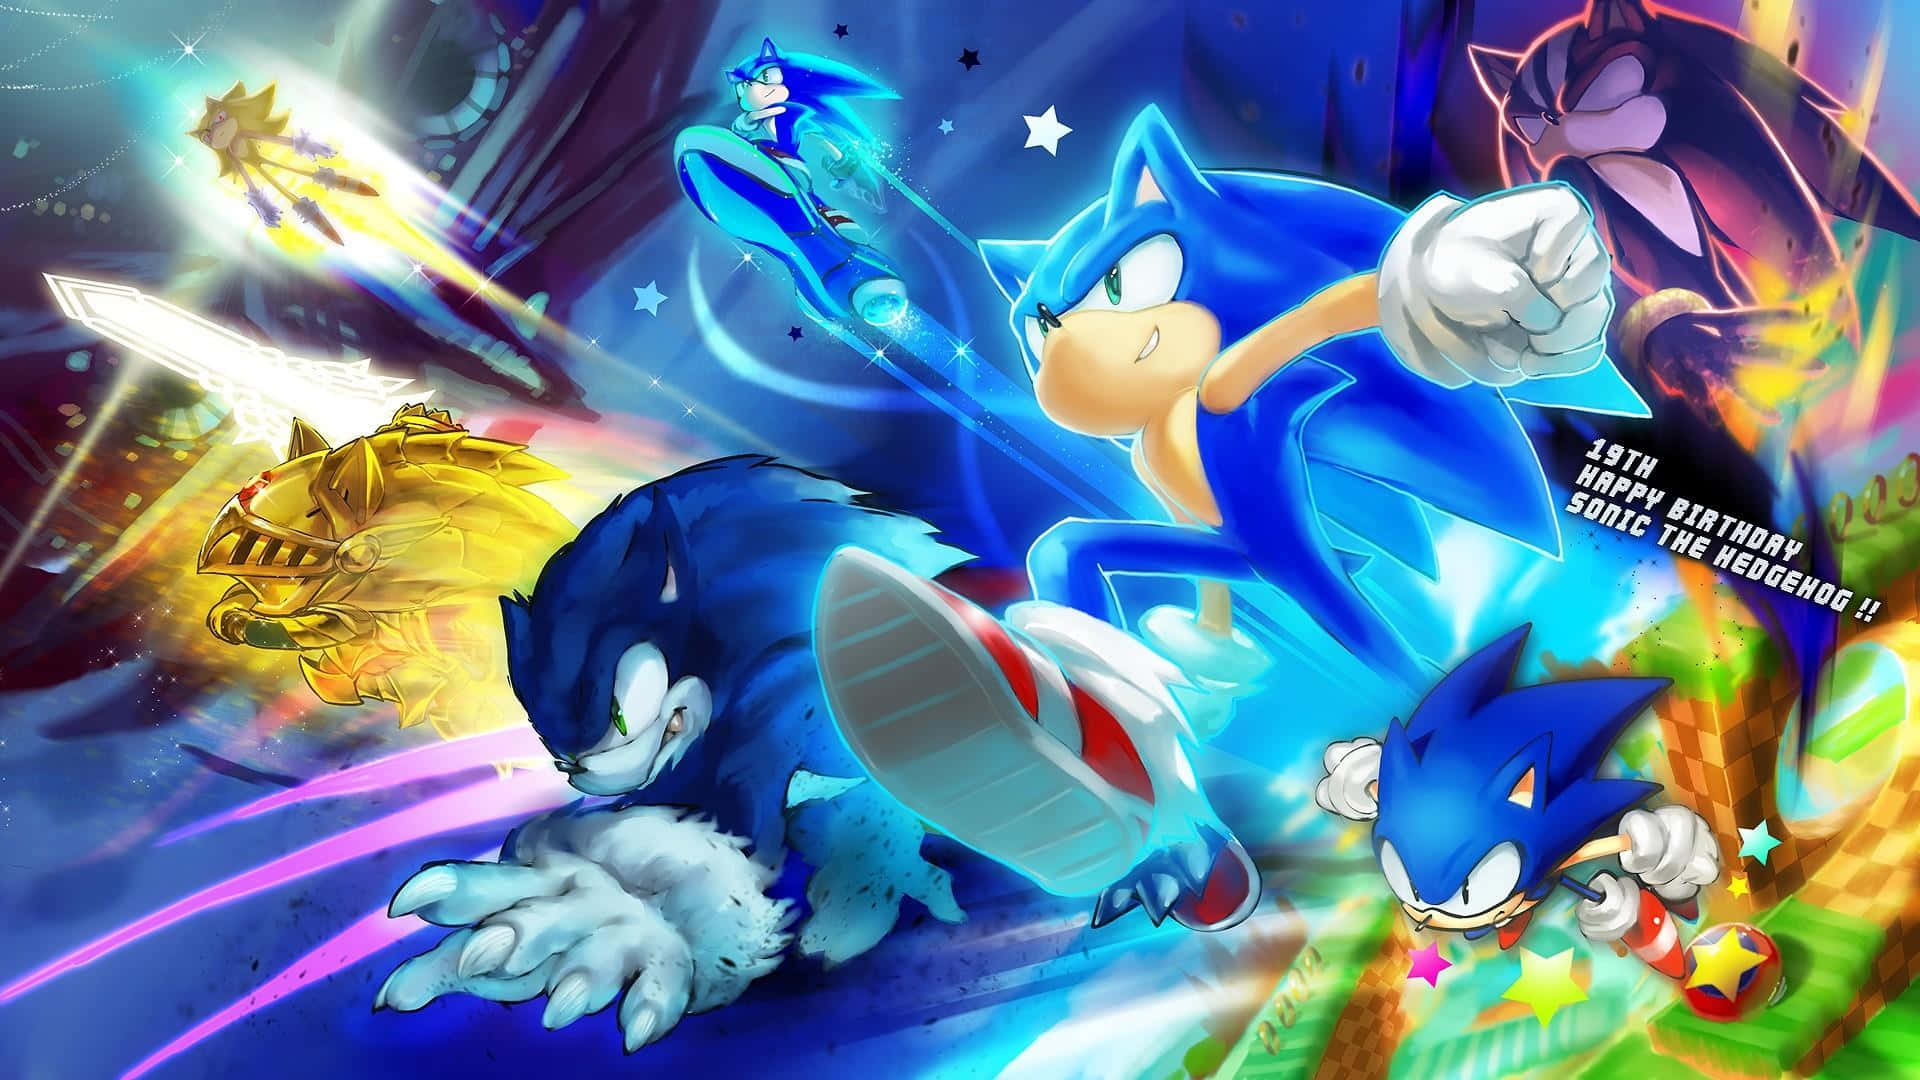 Sonicthe Hedgehog Und Seine Freunde Rennen Im Hintergrund. Wallpaper